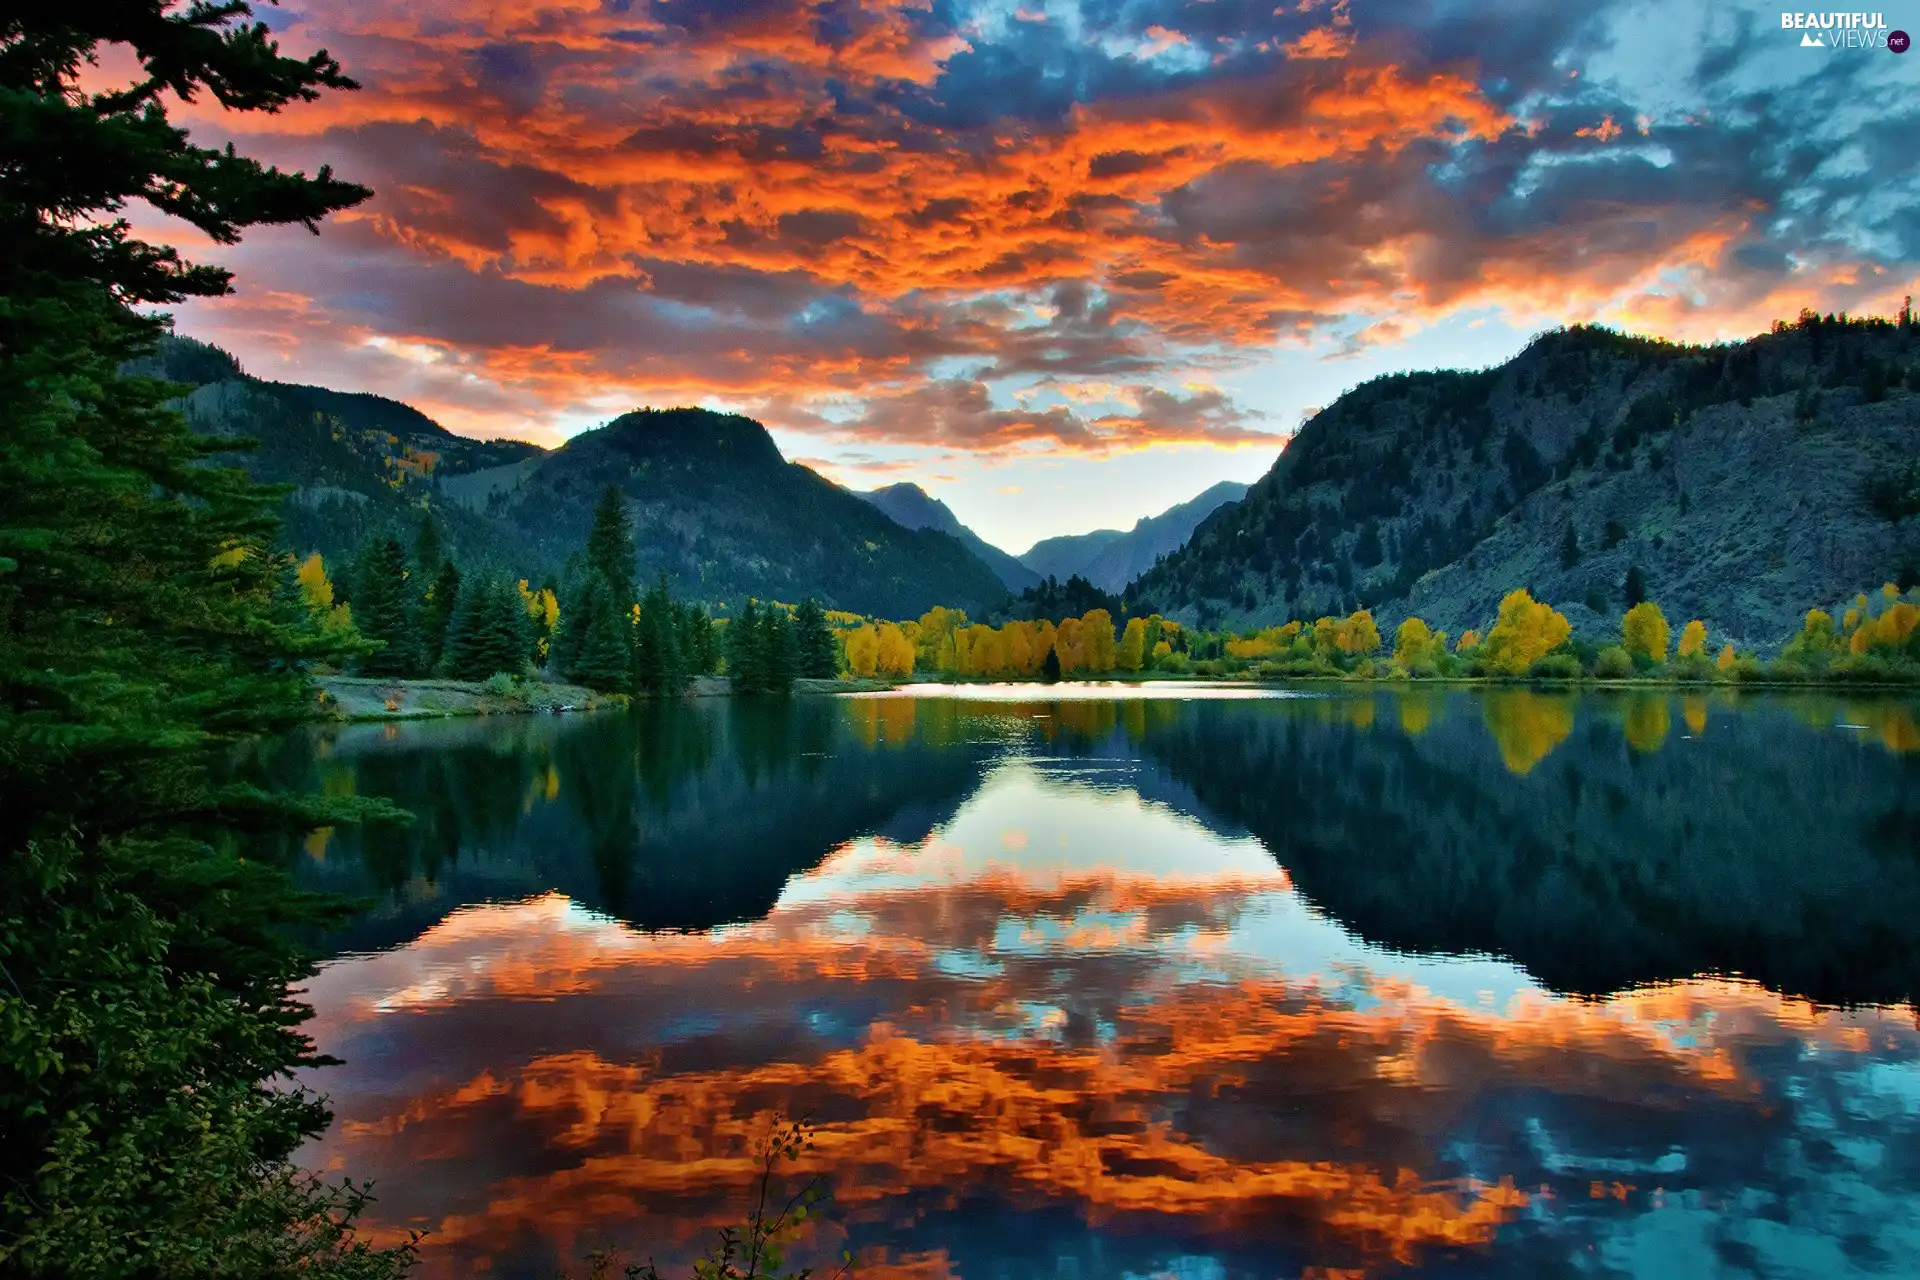 clouds, reflection, Mountains, Orange, lake